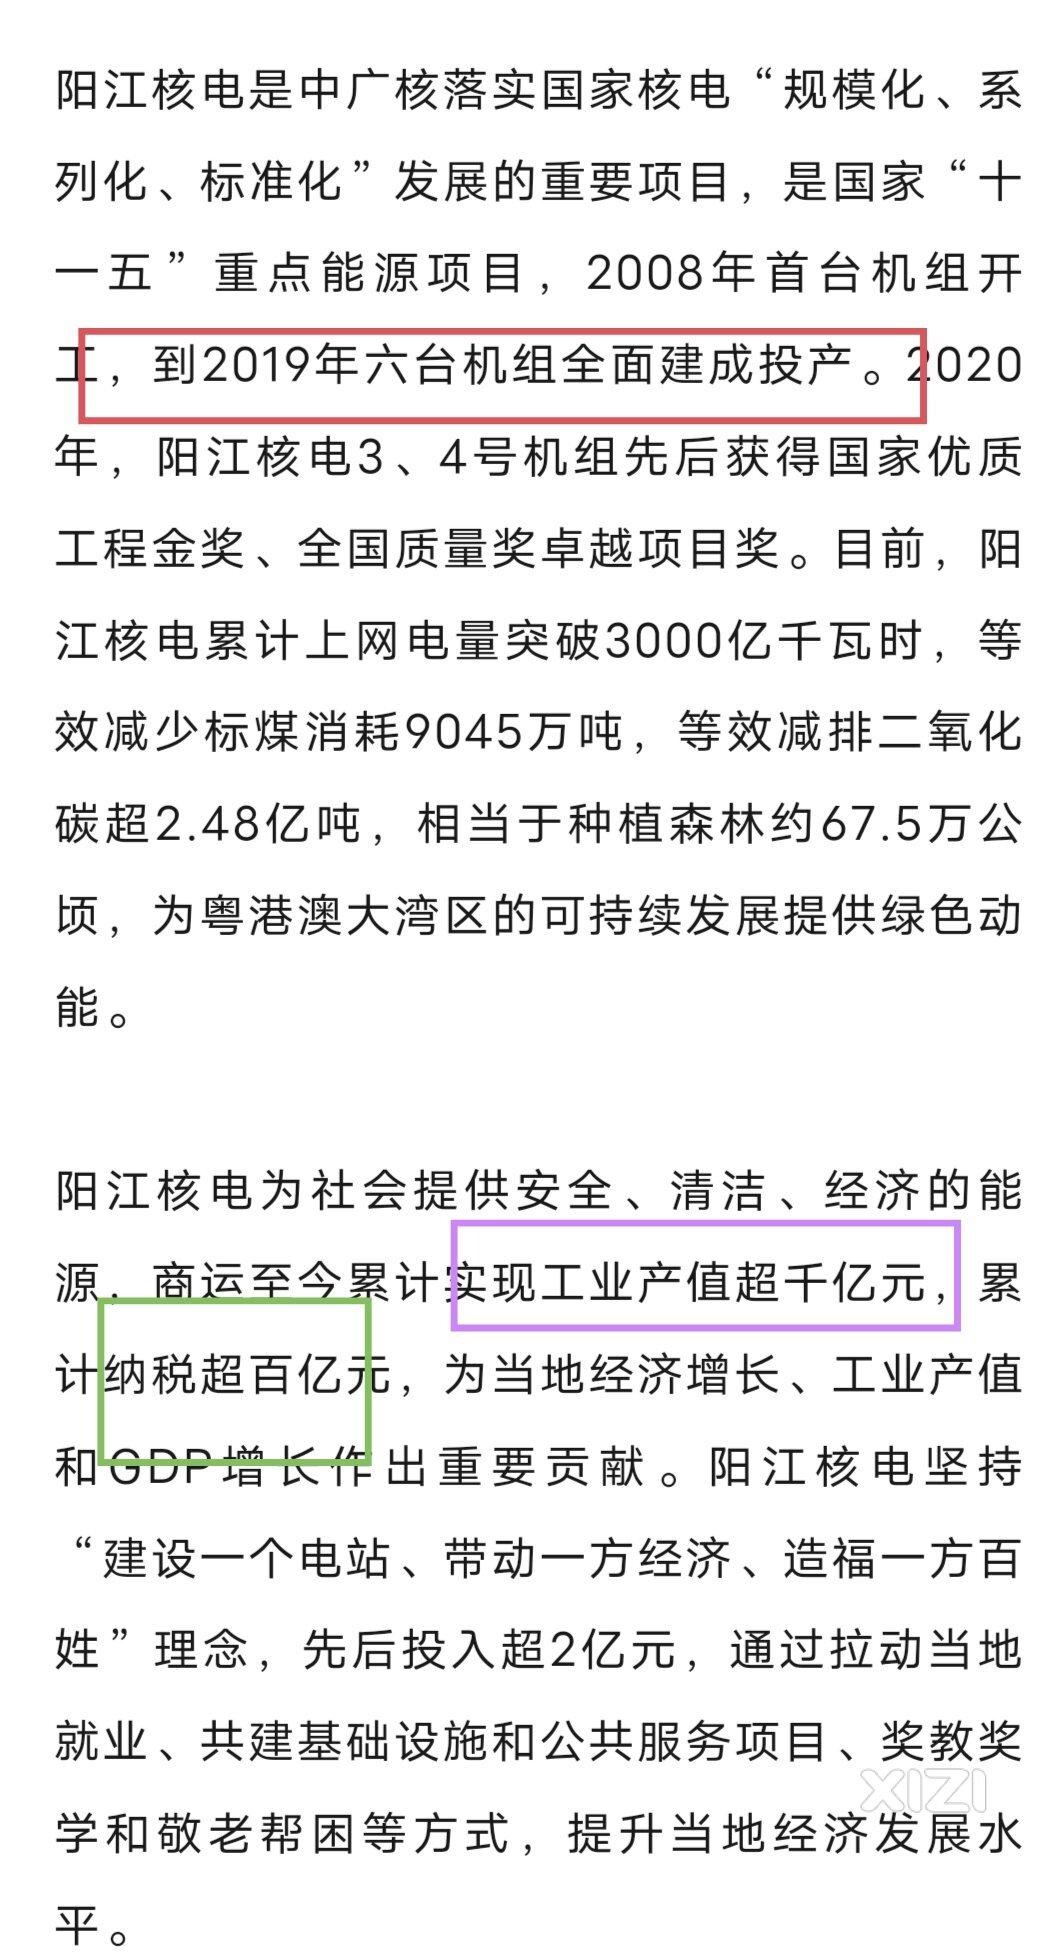 也是6台机组。阳江hd创造了很多税收和工业产值。惠东hd规模更大